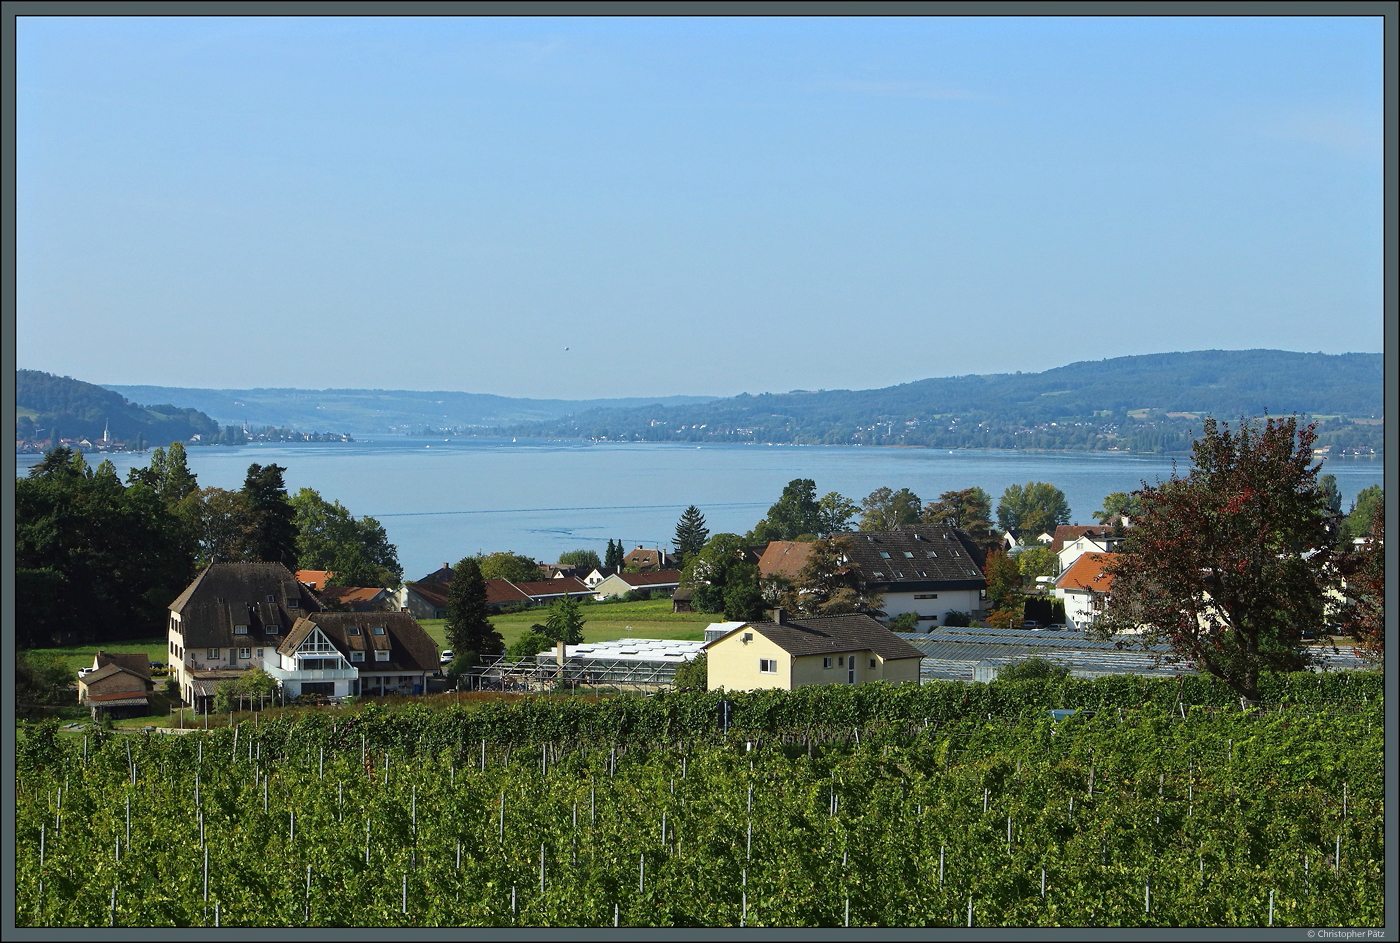 Blick vom hchsten Punkt der Insel Reichenau auf das Dorf Mittelzell und den Rheinsee, der hier die Grenze zwischen Deutschland (rechtes Ufer) und der Schweiz (links) bildet. (Reichenau, 08.10.2023)